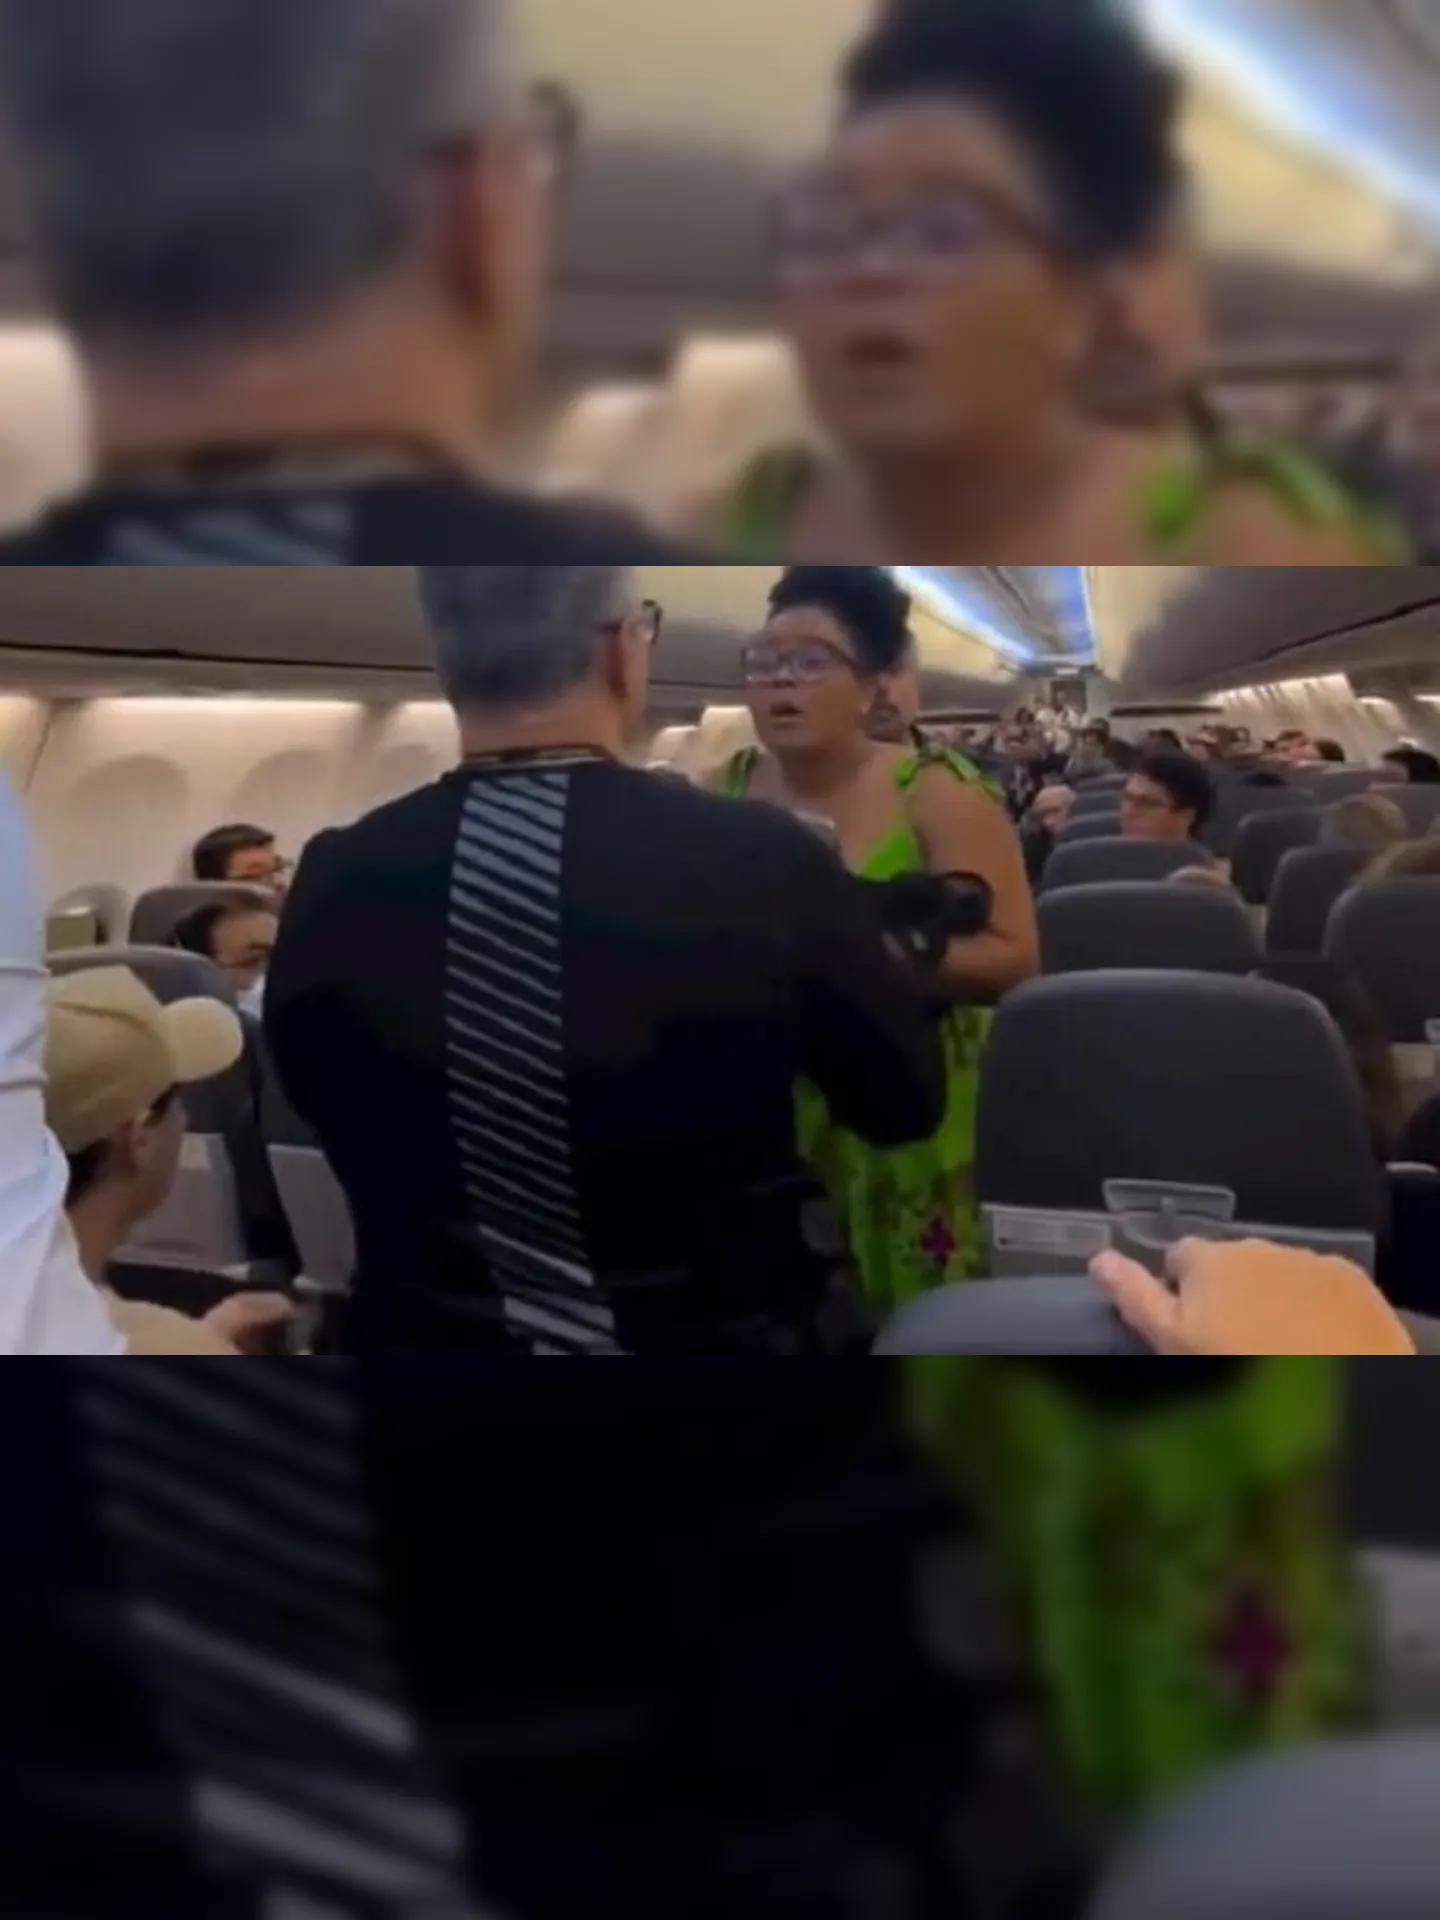 Agentes da Polícia Federal abordaram a mulher dentro da aeronave